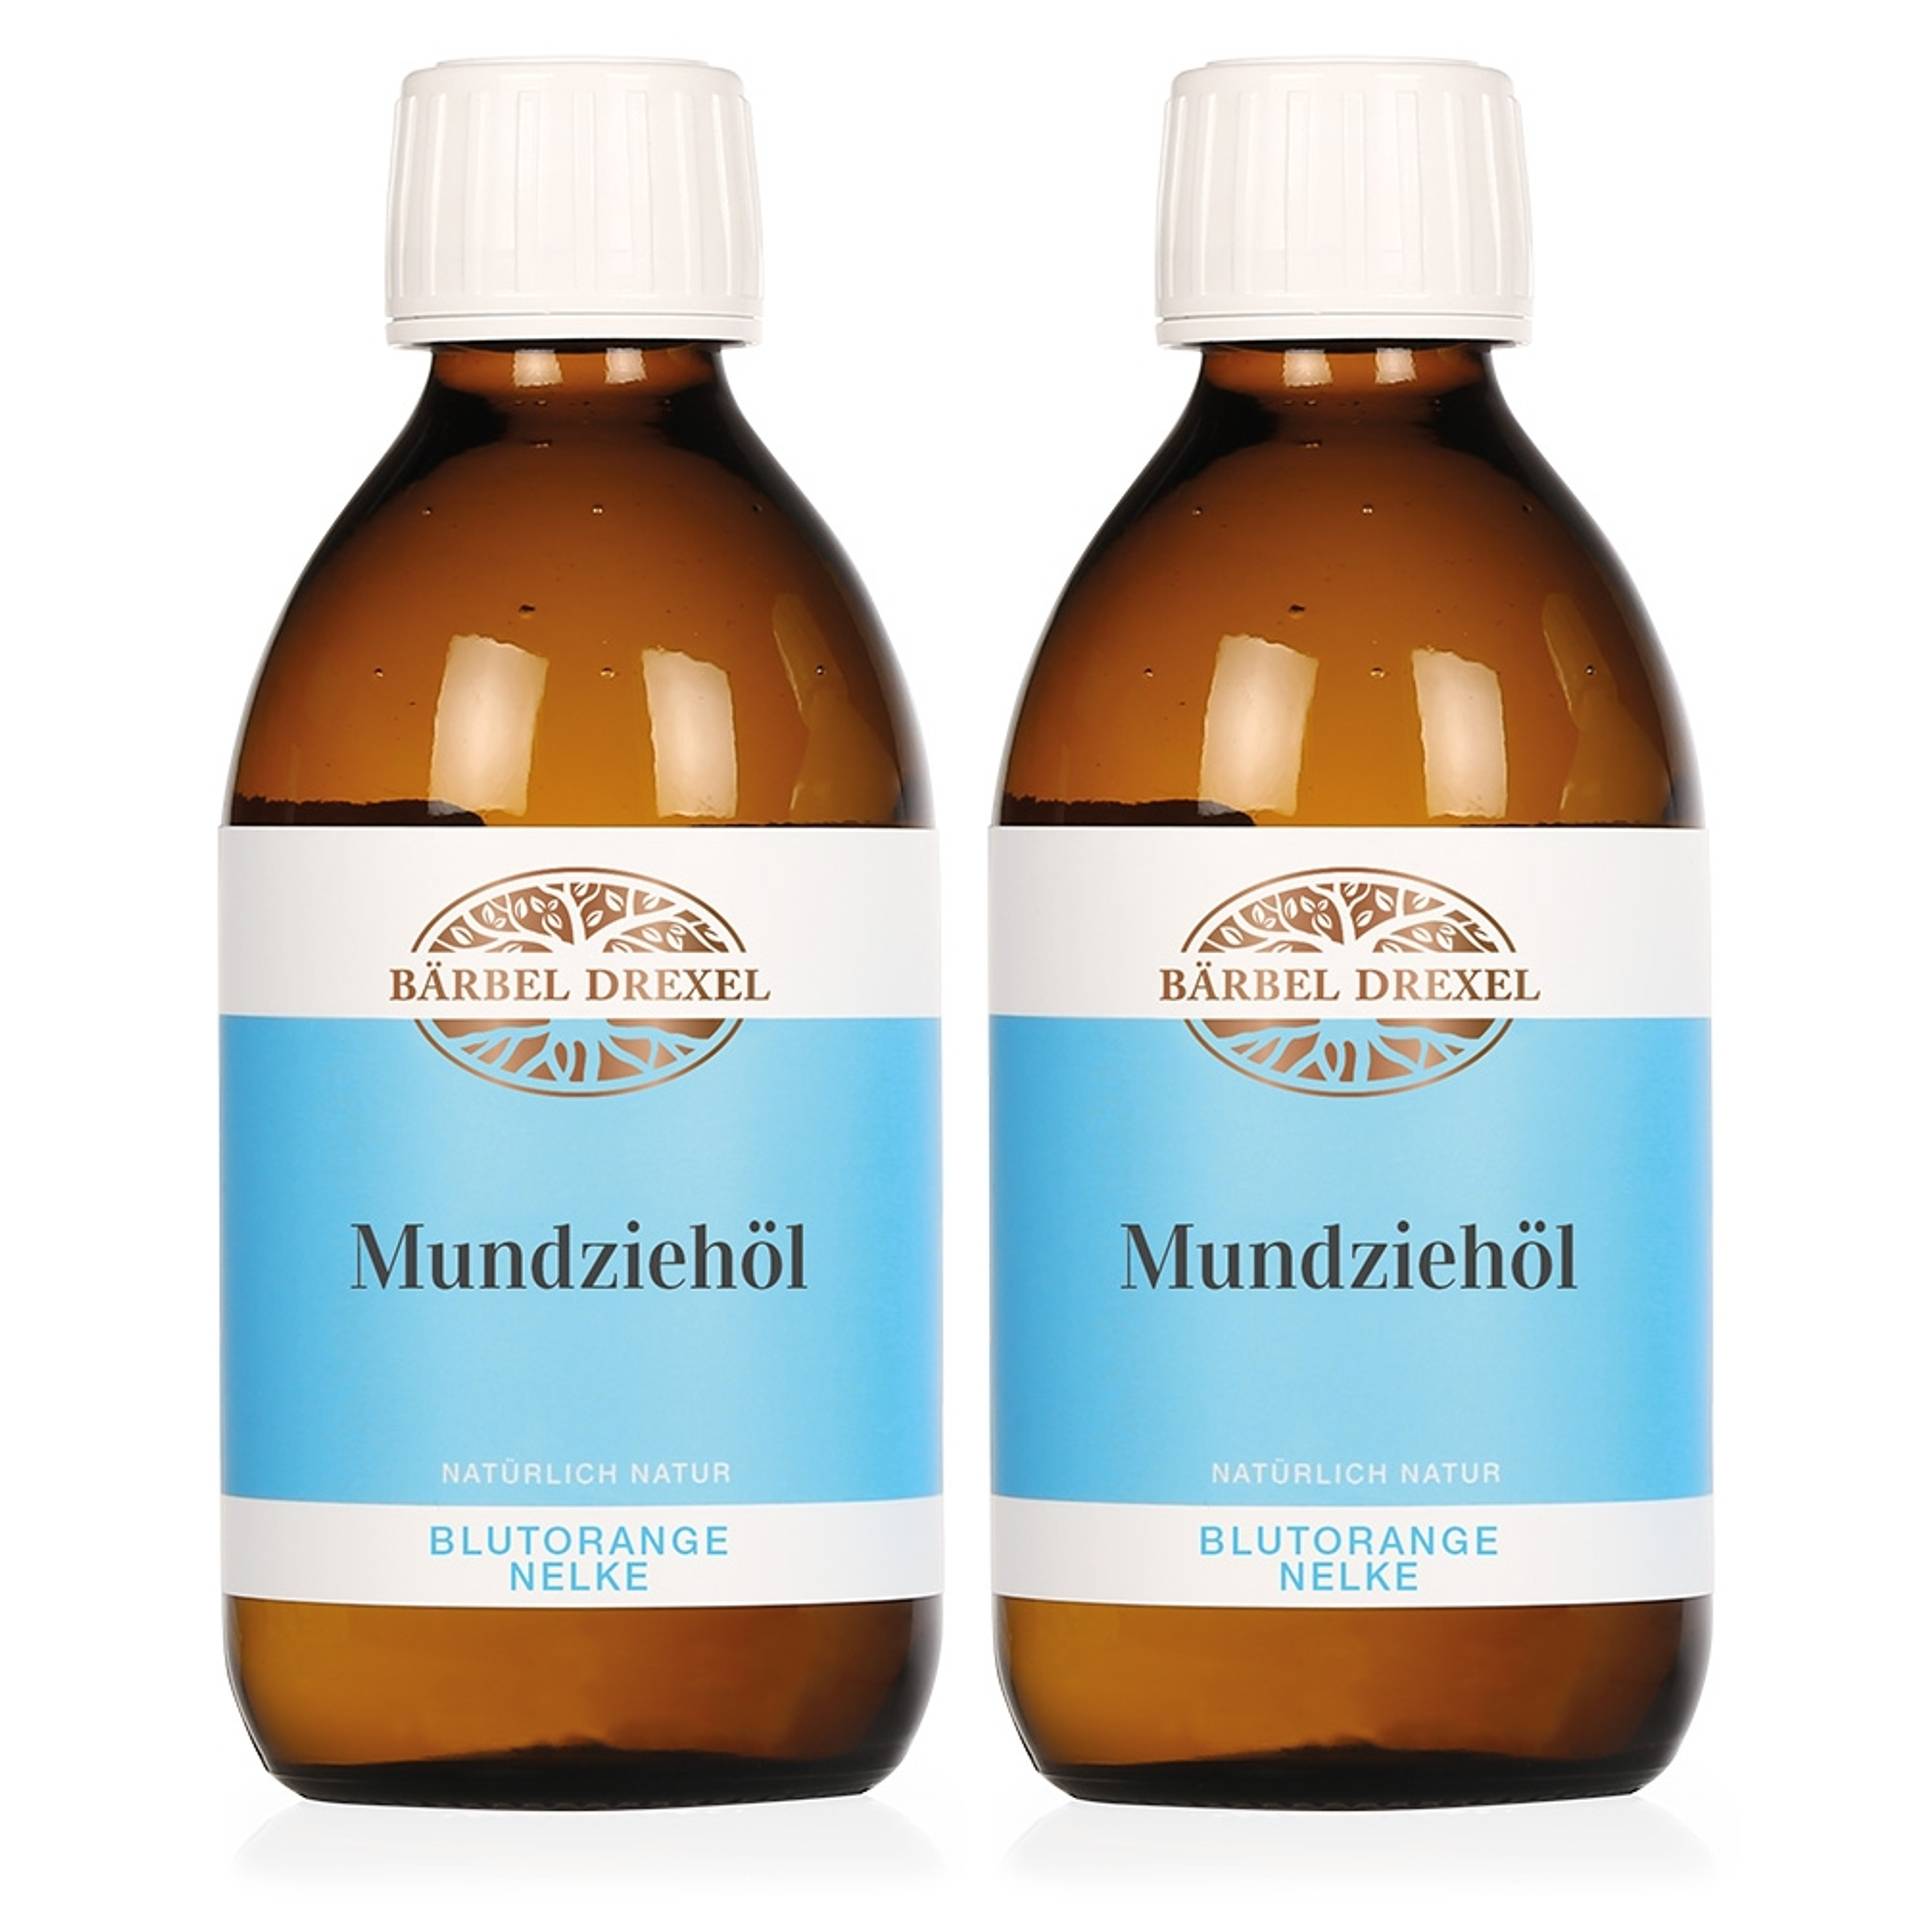 Duo Mundziehöl Blutorange/Nelke, 2 x 250ml